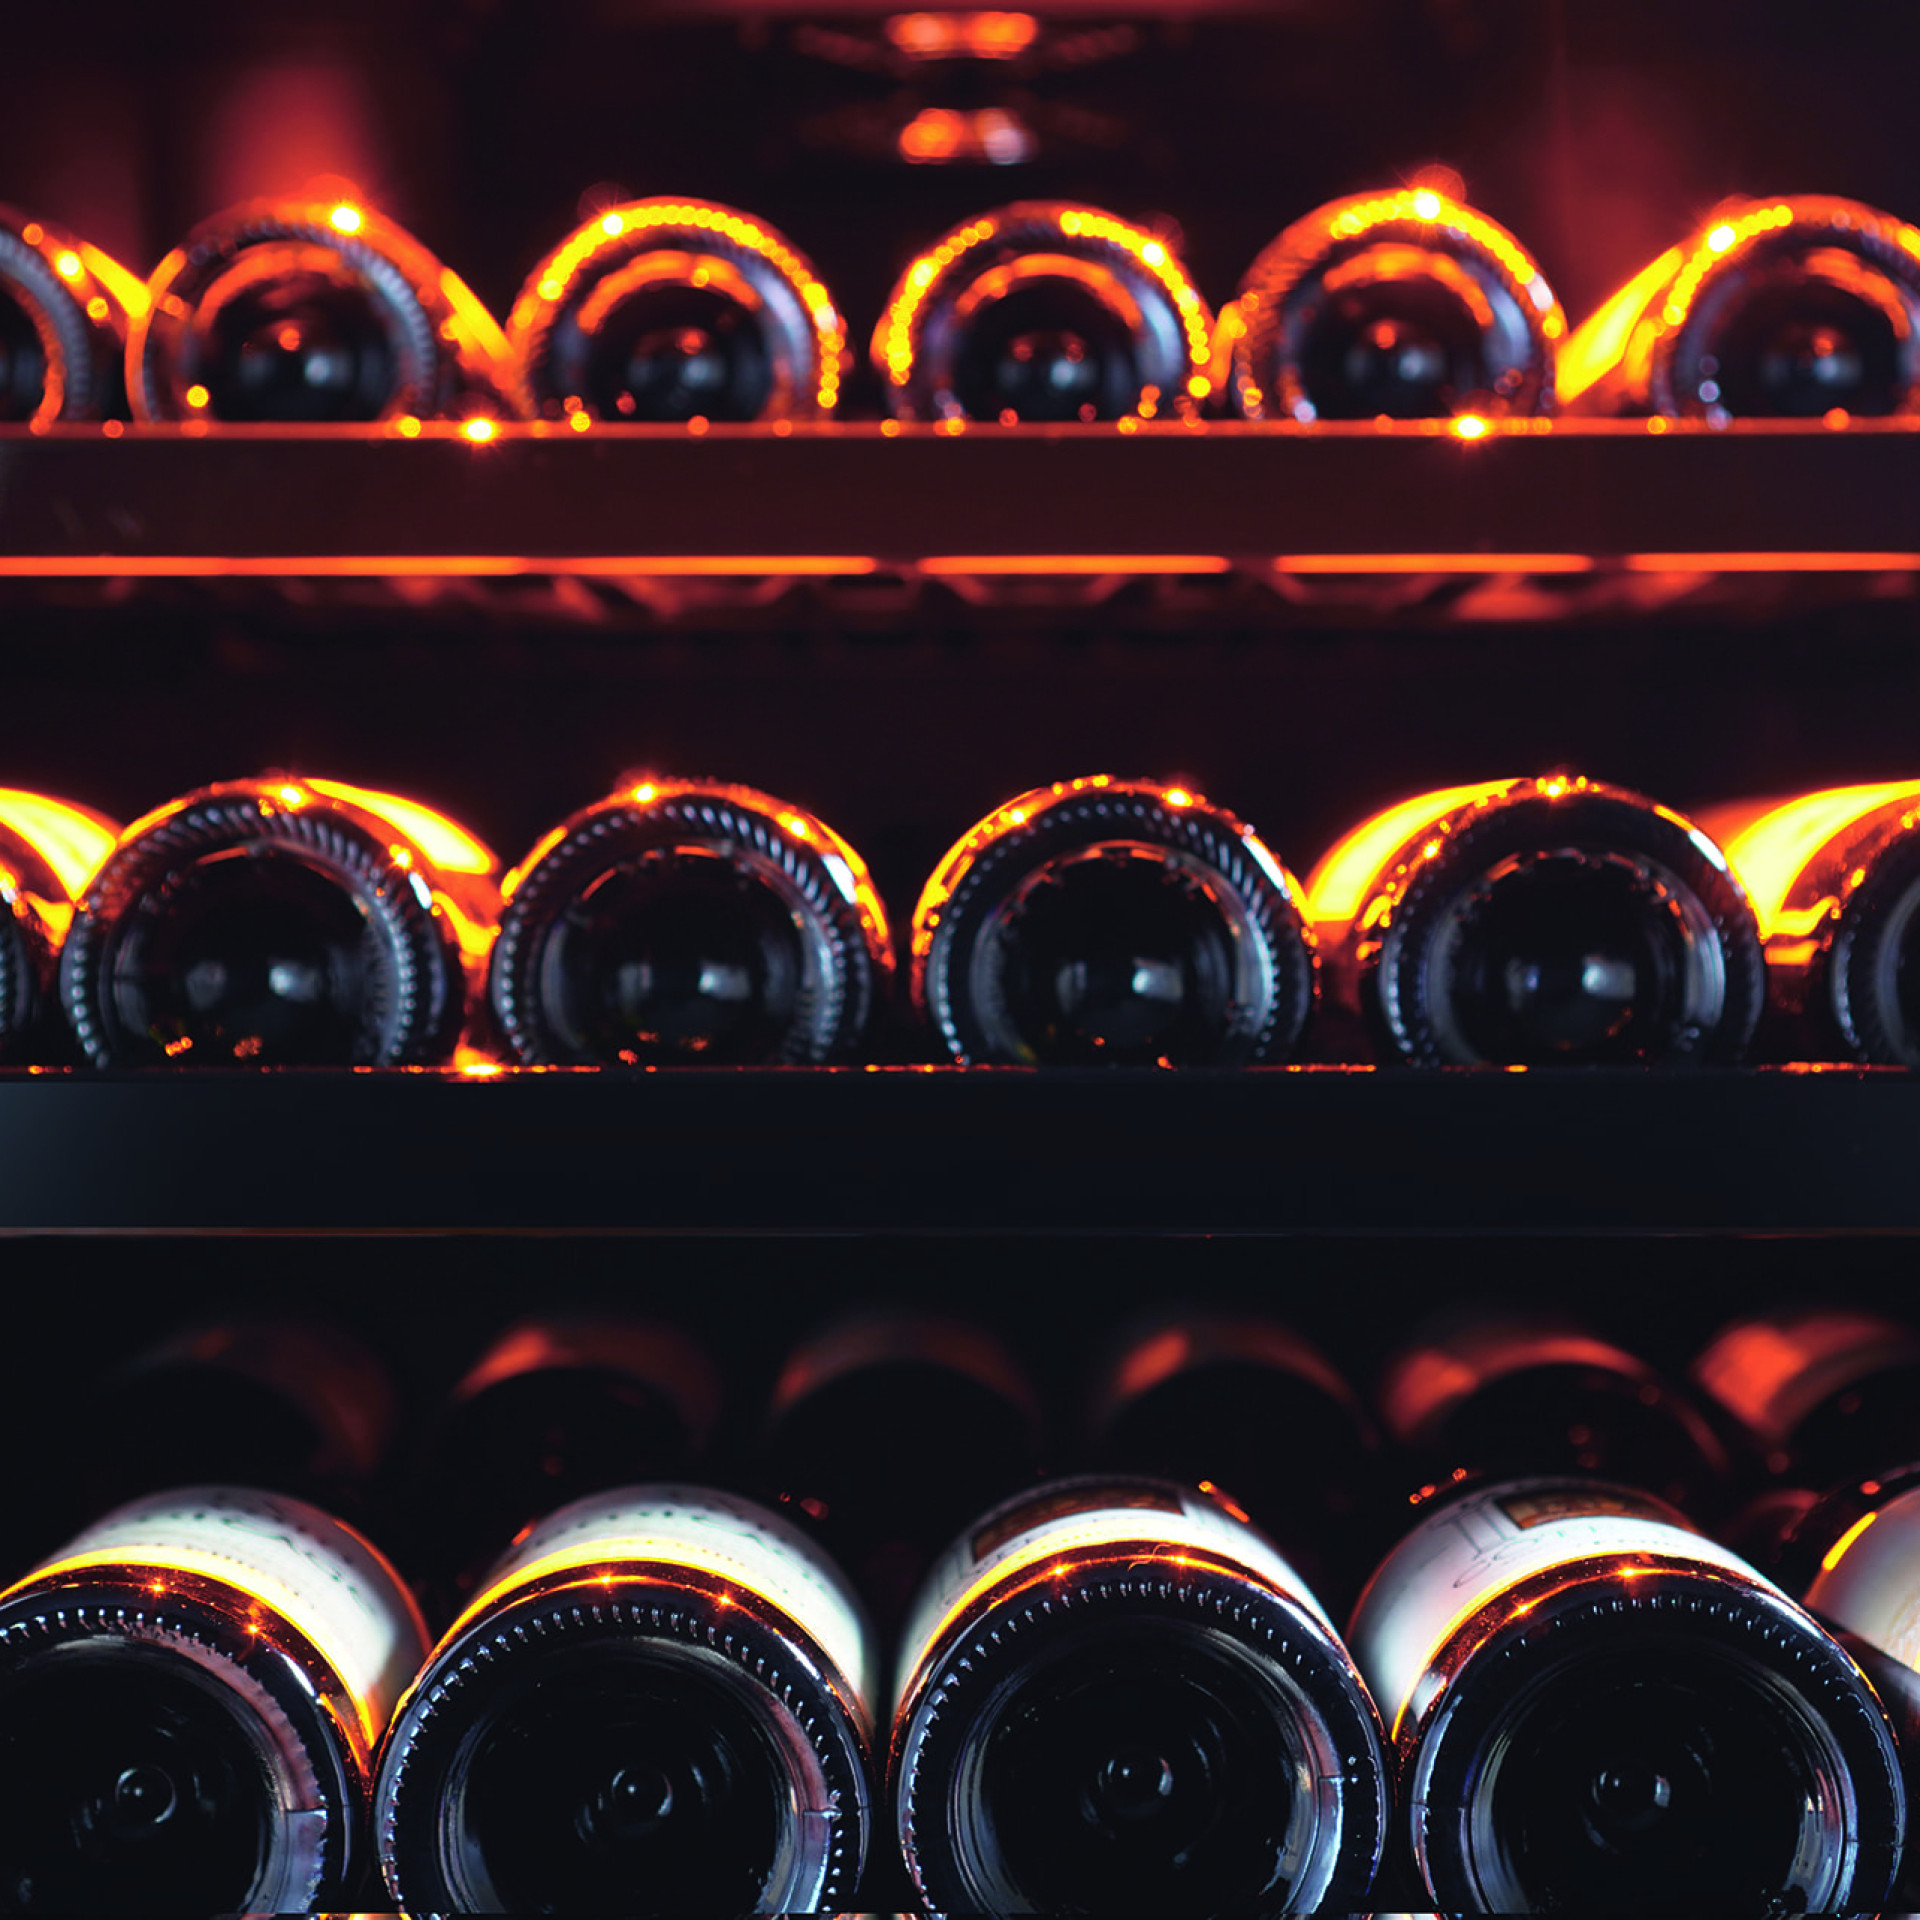 Rangement cave à vin - étagères en métal avec supports bouteilles individuels, façade noire brillante.